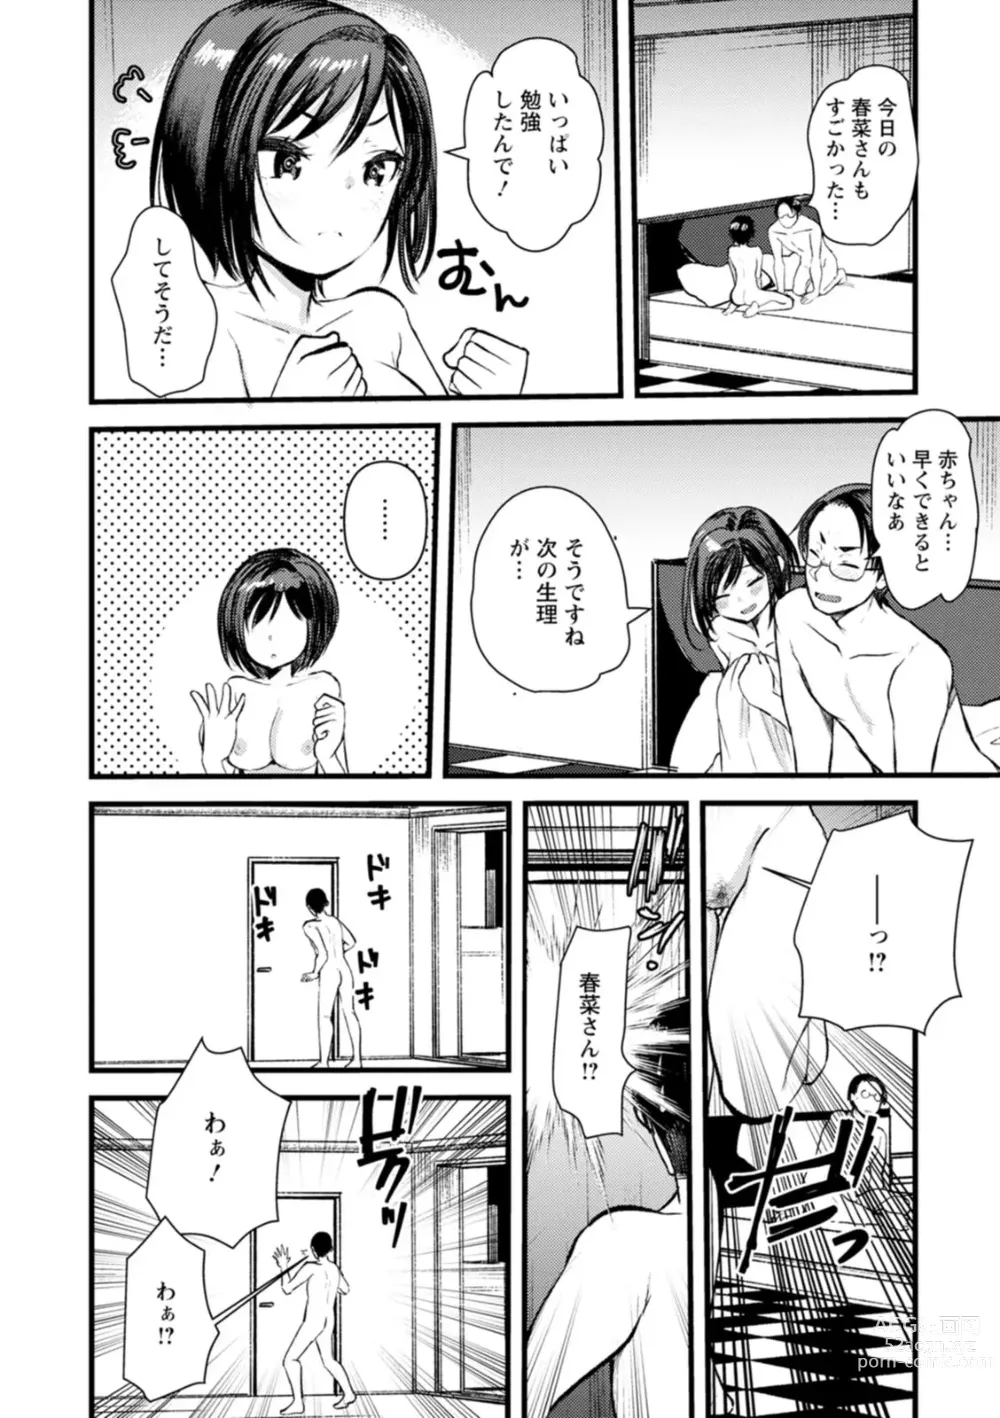 Page 189 of manga Niizuma san no Kojirase Ero Nikki